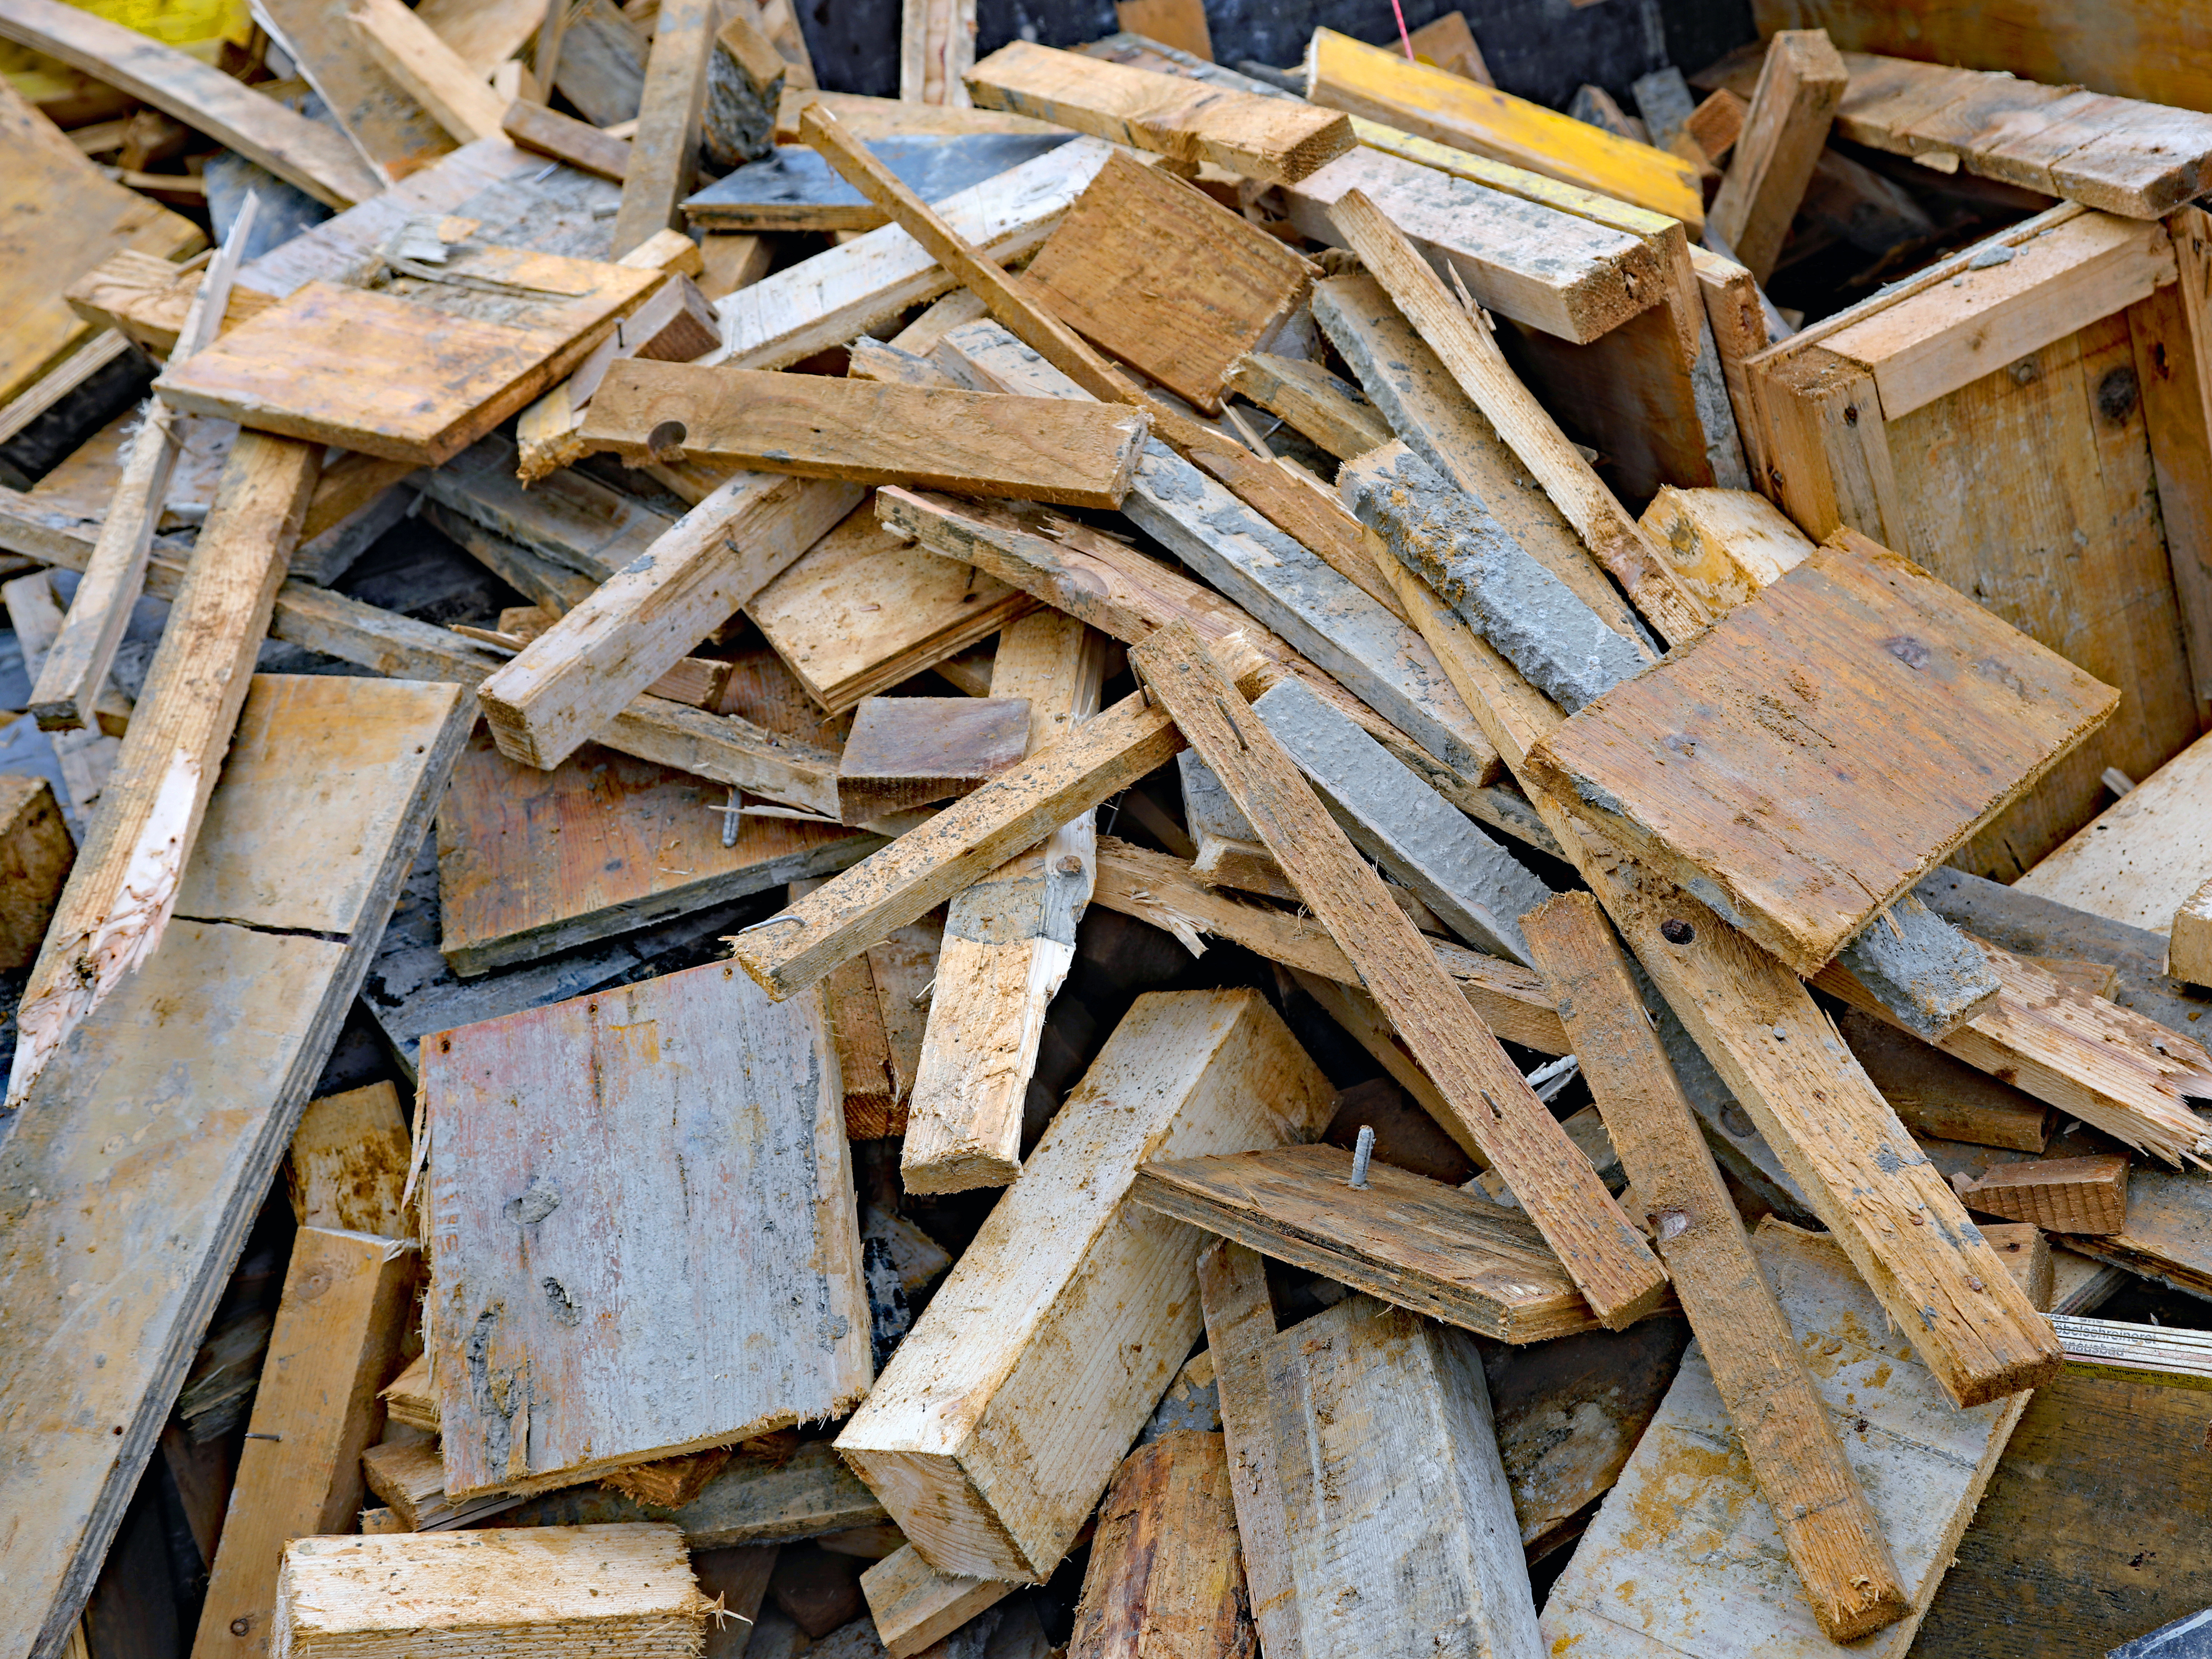  Rund die Hälfte des Holzes wird hierzulande energetisch genutzt. Foto: Adobe Stock